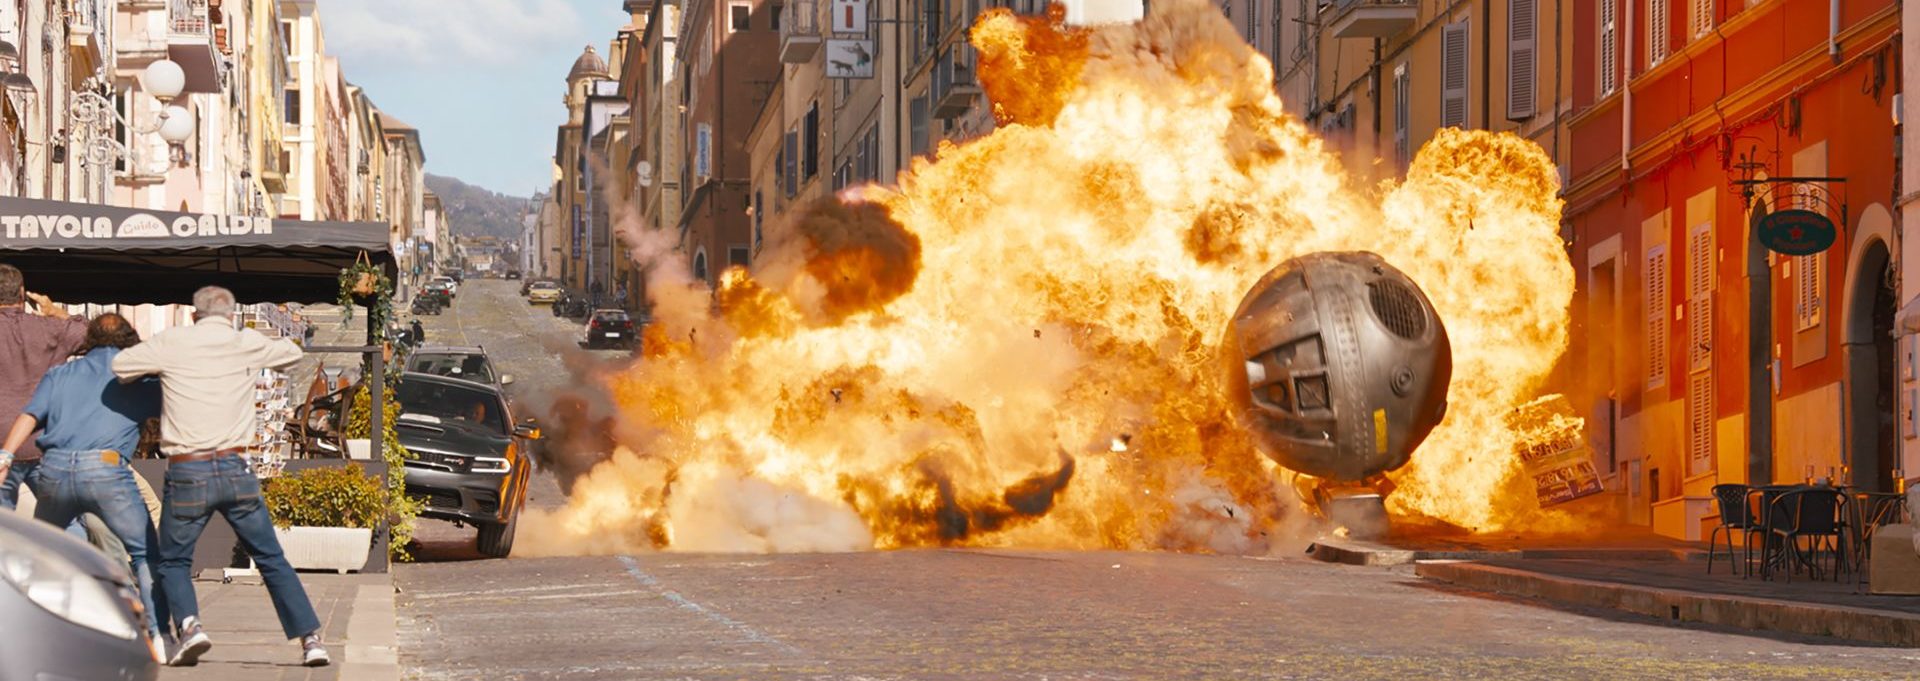 Ein explosiver zehnter Film der Fast and Furious Reihe steht bevor, wie der neu Trailer zeigt.